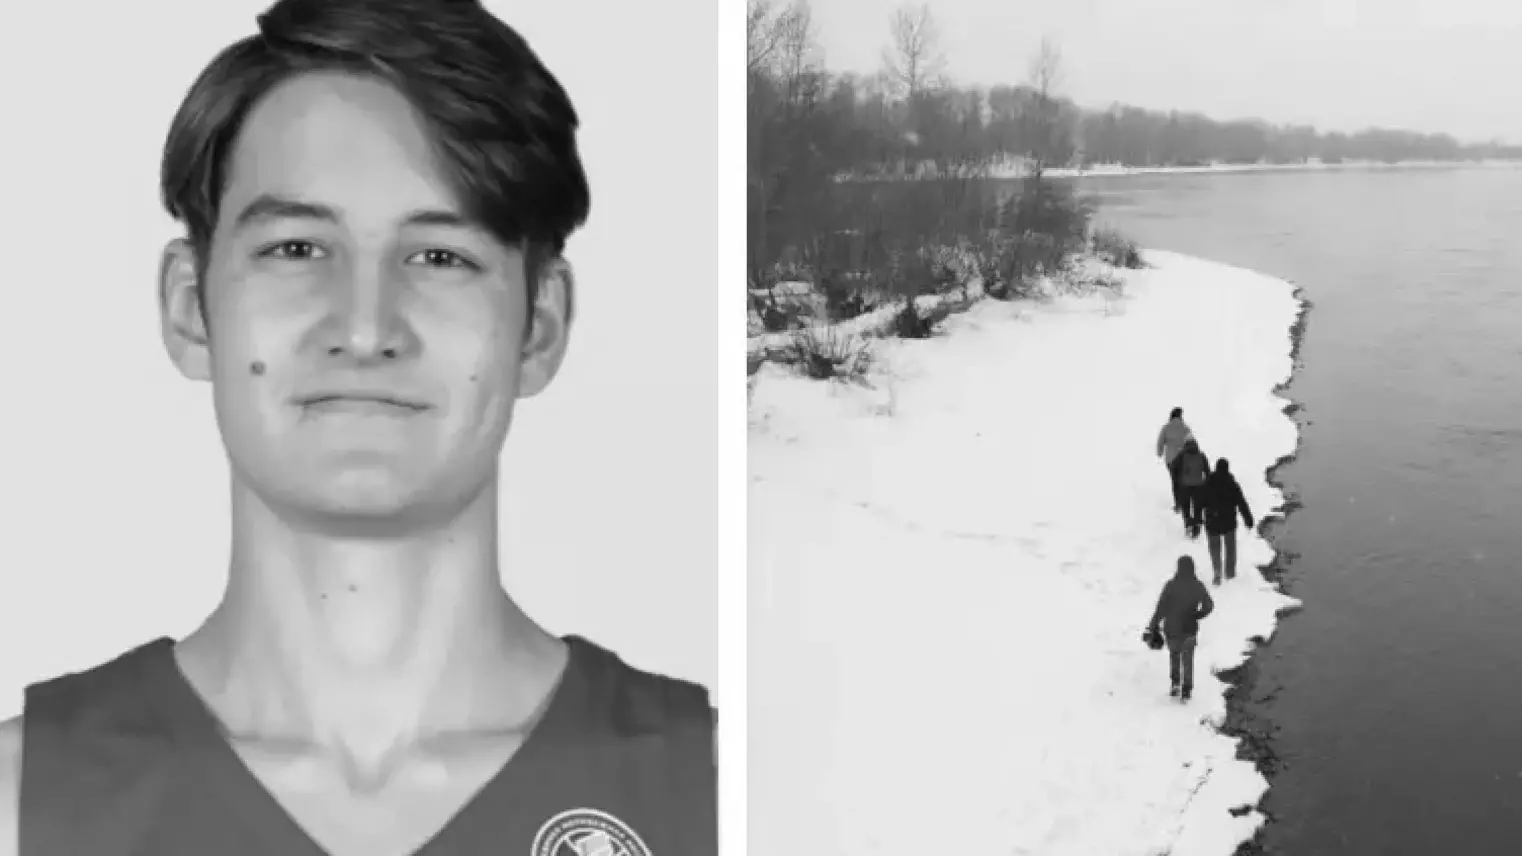 Спасатели нашли тело 20-летнего баскетболиста, упавшего с моста в декабре